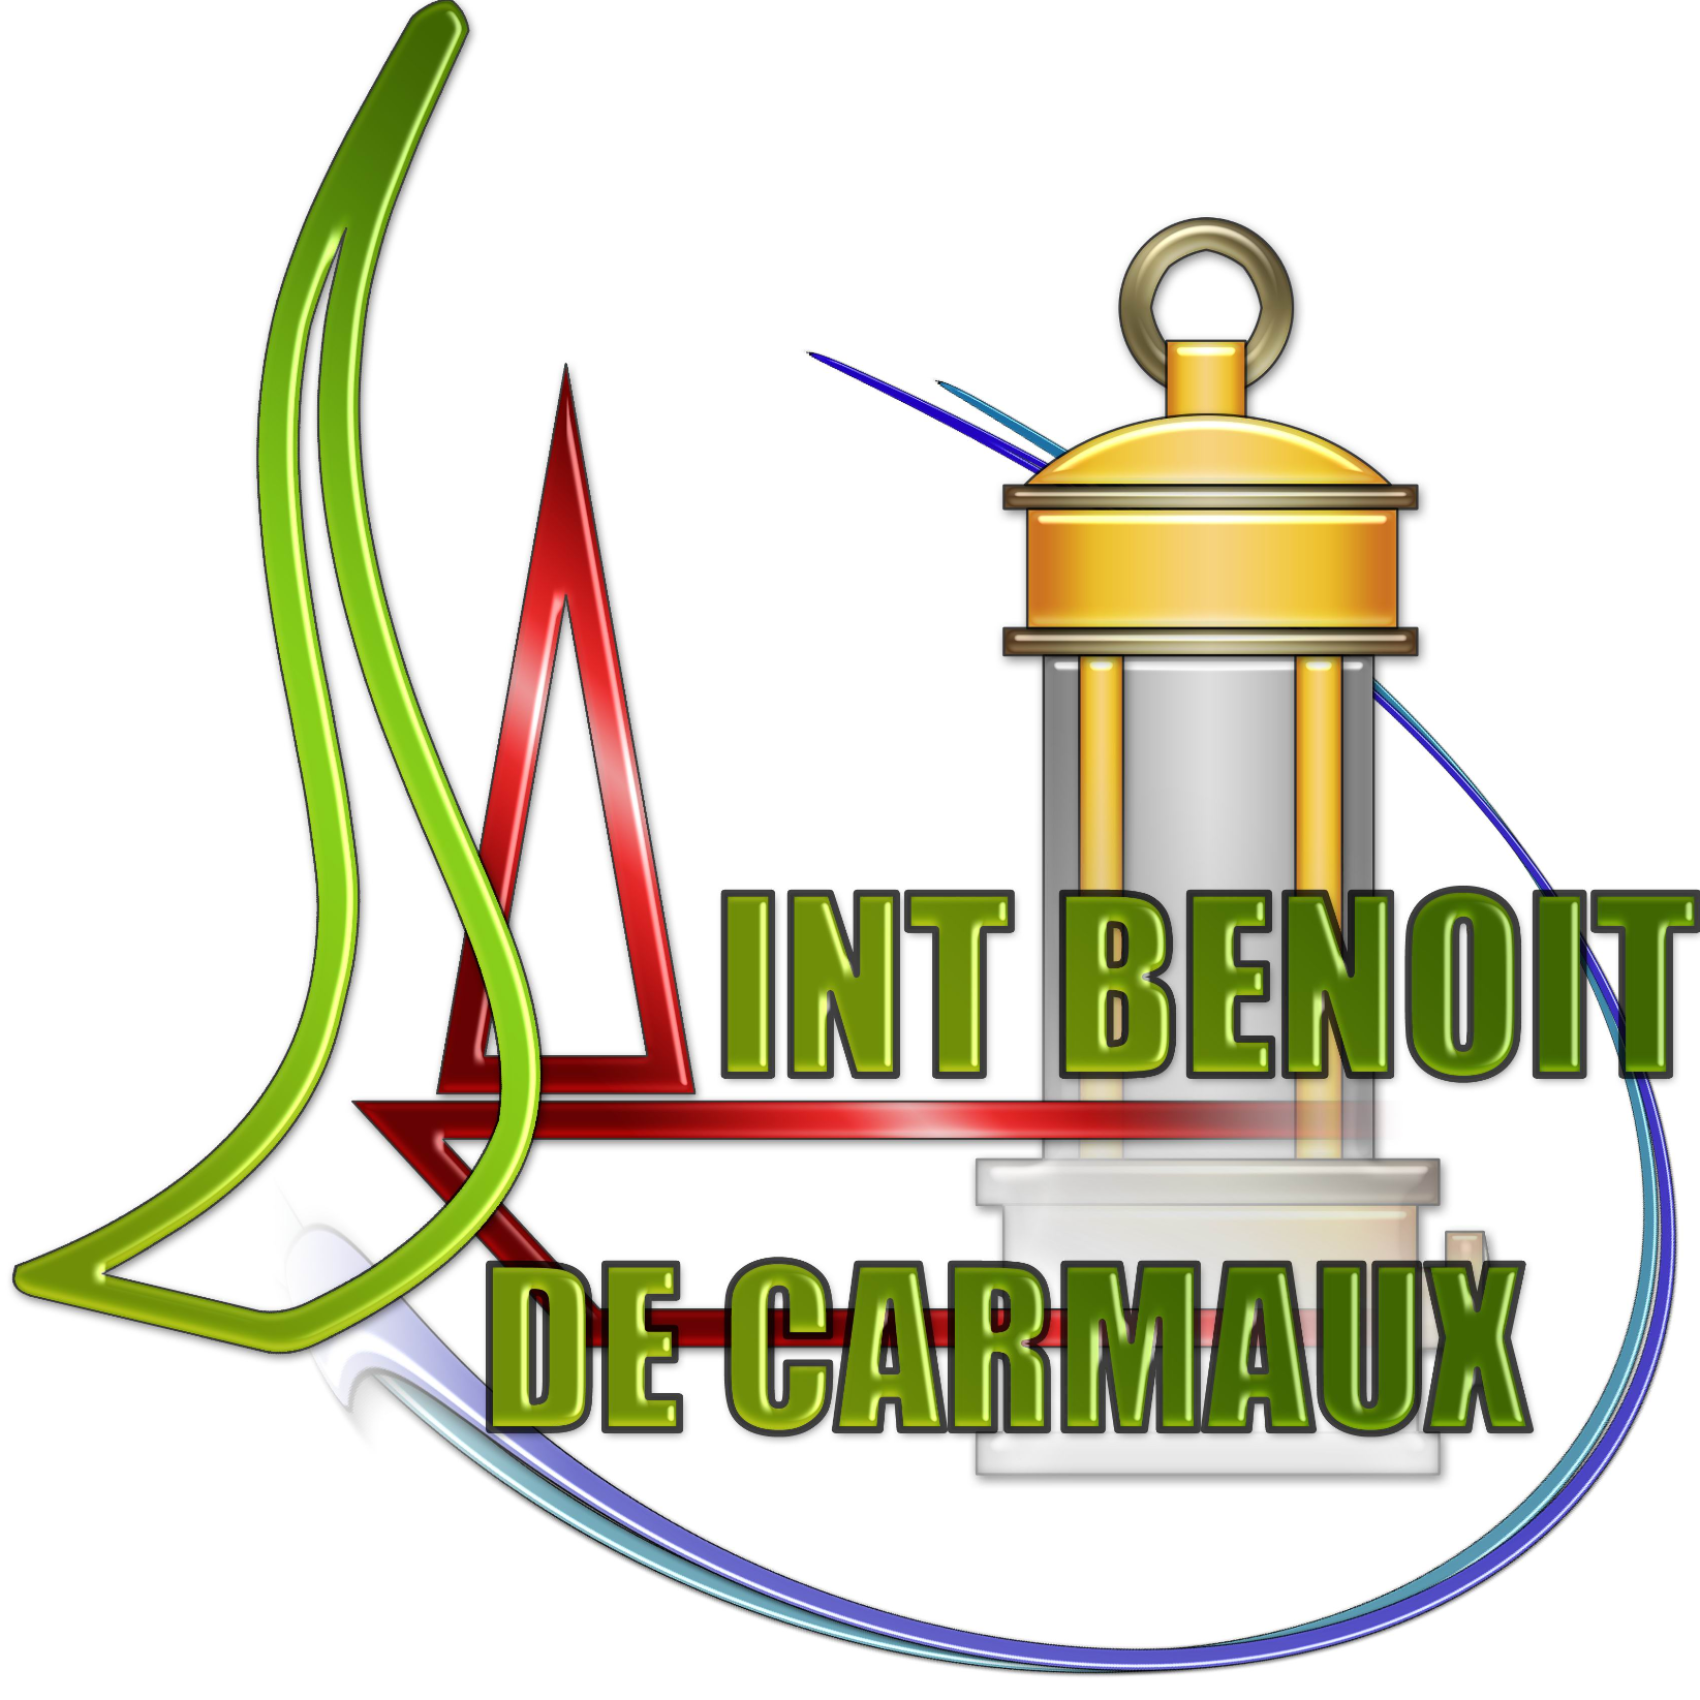 (c) Saint-benoit-de-carmaux.fr